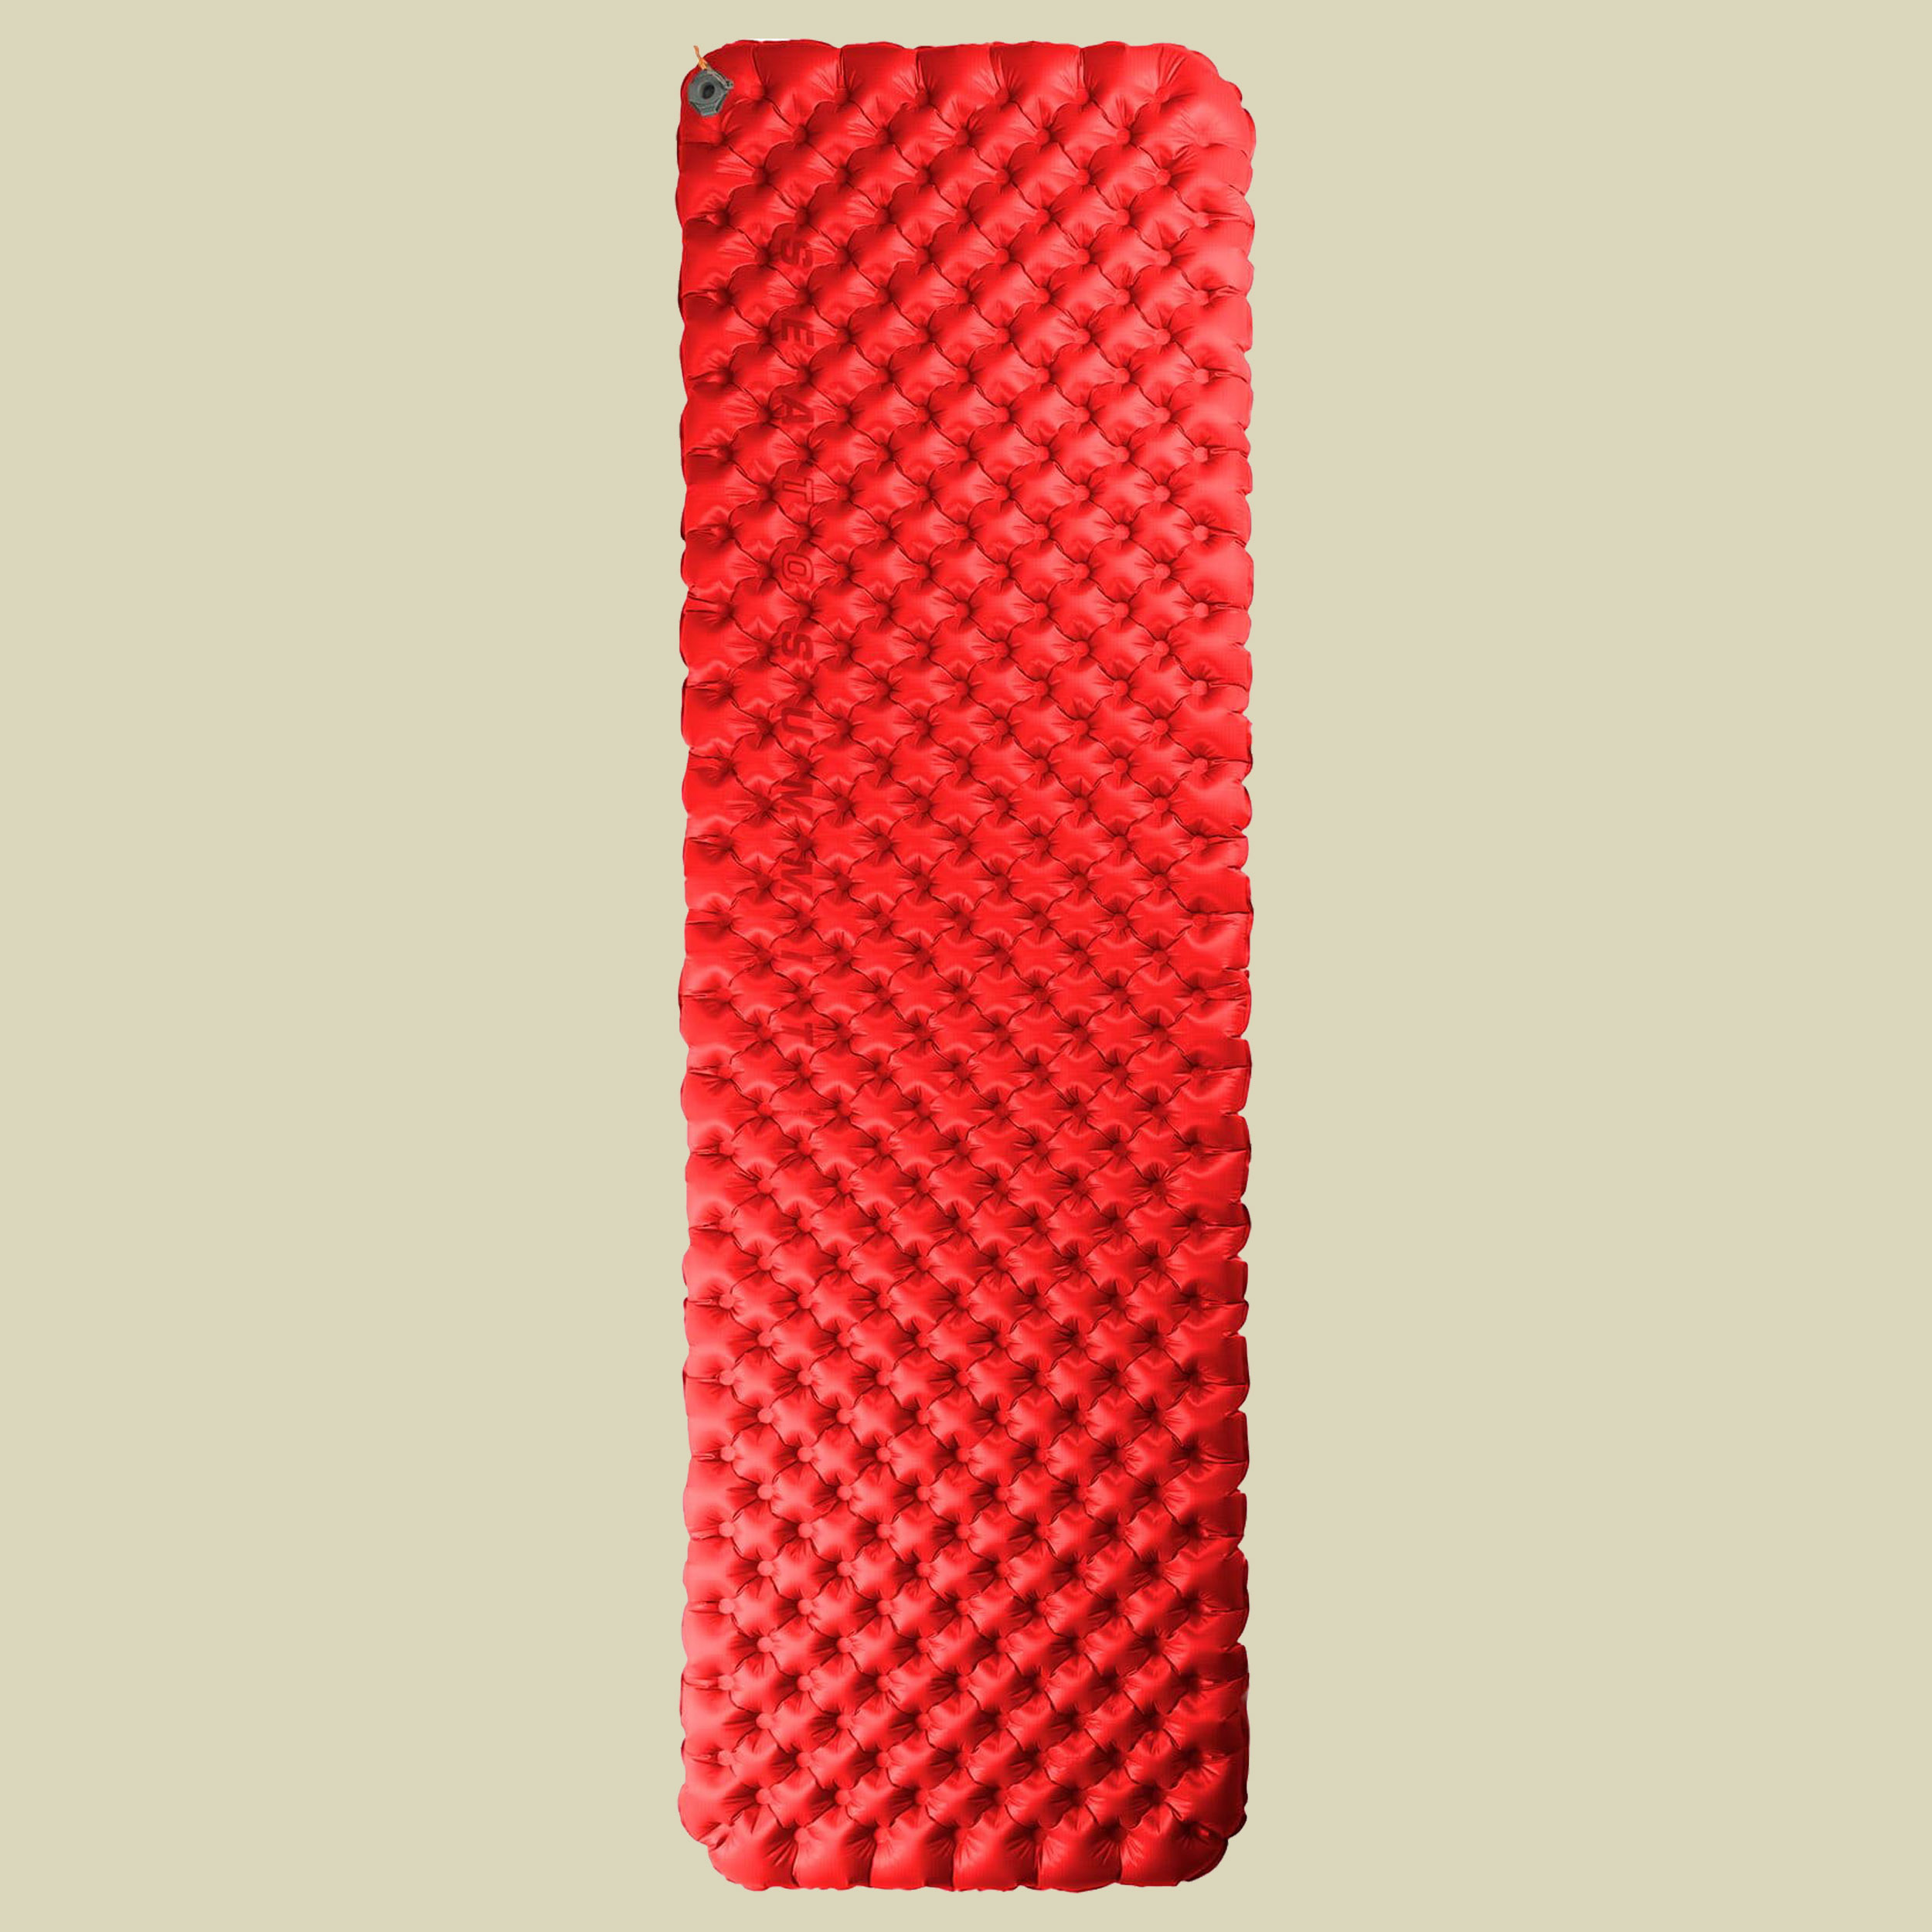 Comfort Plus XT Insulated Air Rectangular Liegefläche 202 x 64 cm Farbe red